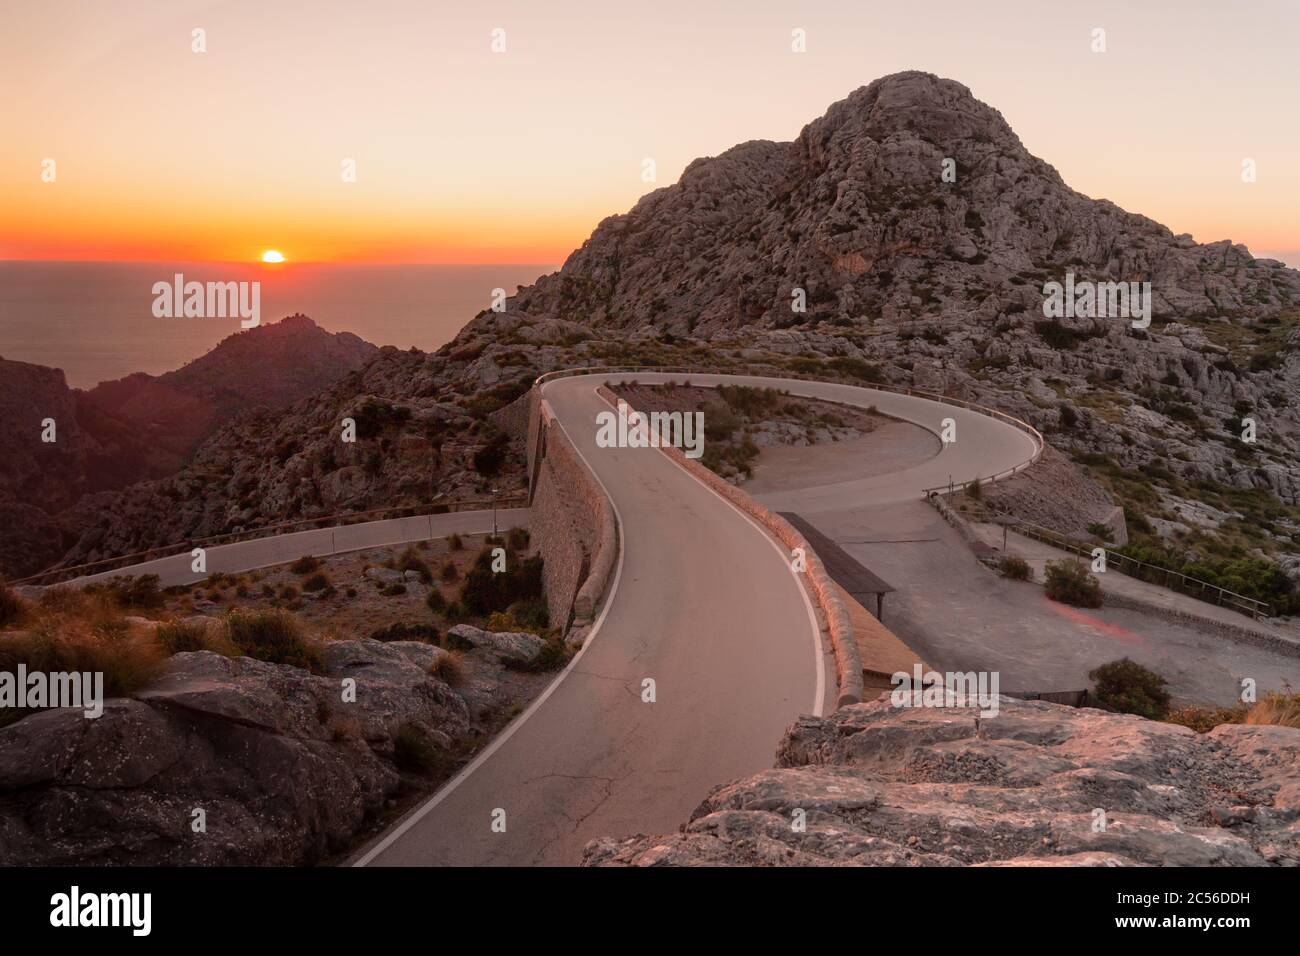 Spectaculaire route de montagne connue sous le nom de nus de sa Corbata à Majorque, Espagne au coucher du soleil. Concept de route singulier Banque D'Images